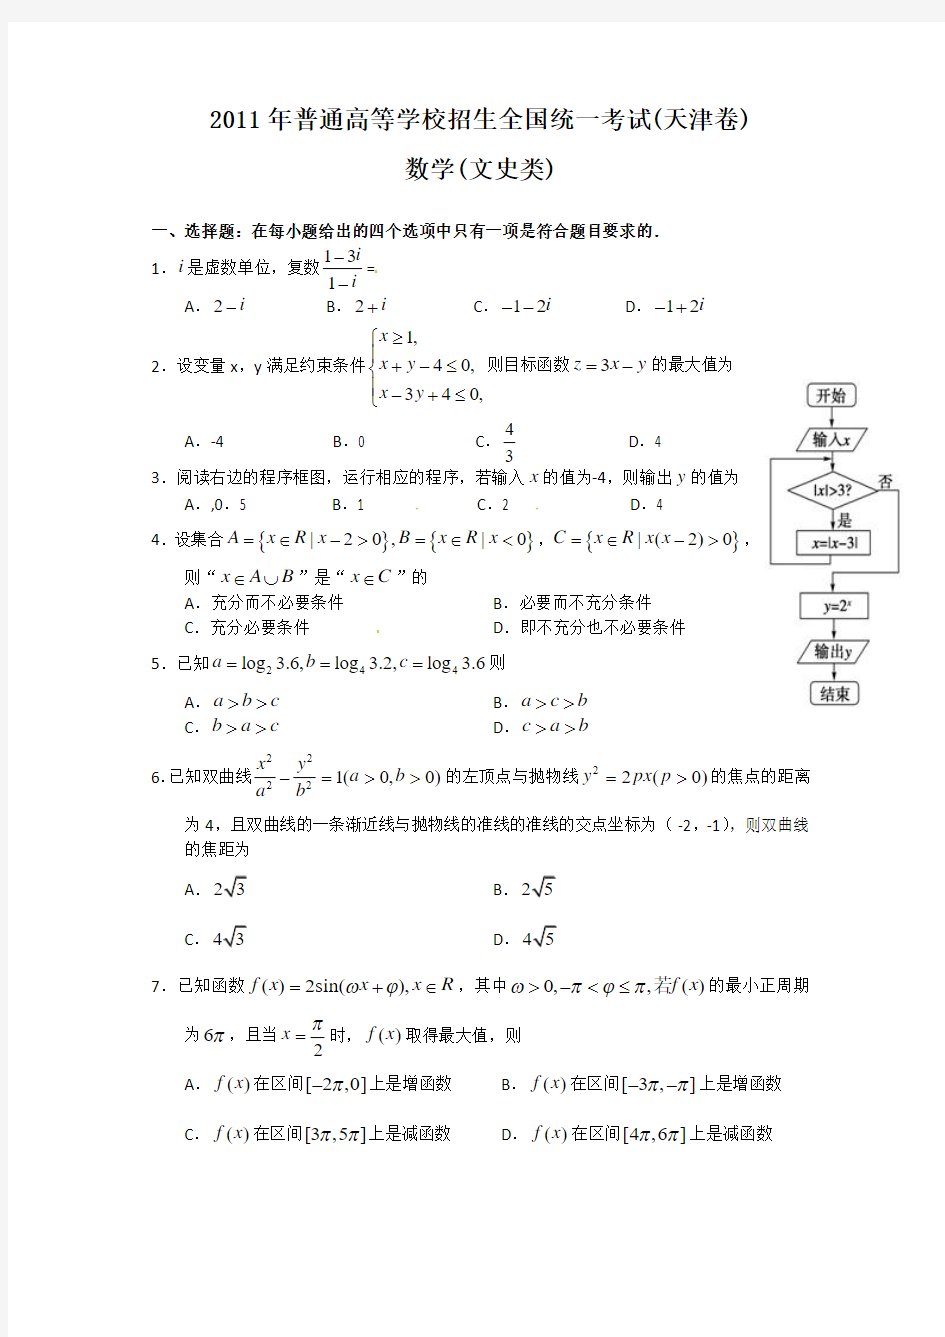 2011年高考文科数学(天津卷)